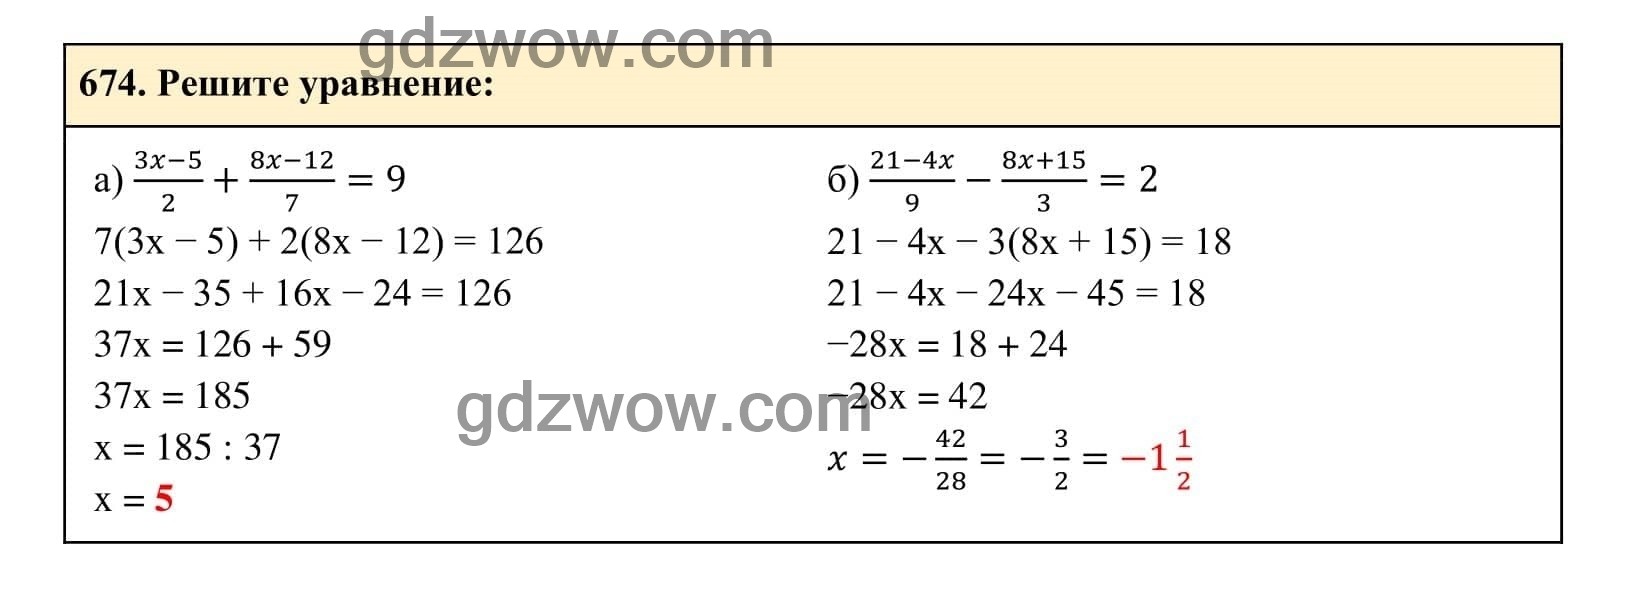 Упражнение 674 - ГДЗ по Алгебре 7 класс Учебник Макарычев (решебник) - GDZwow